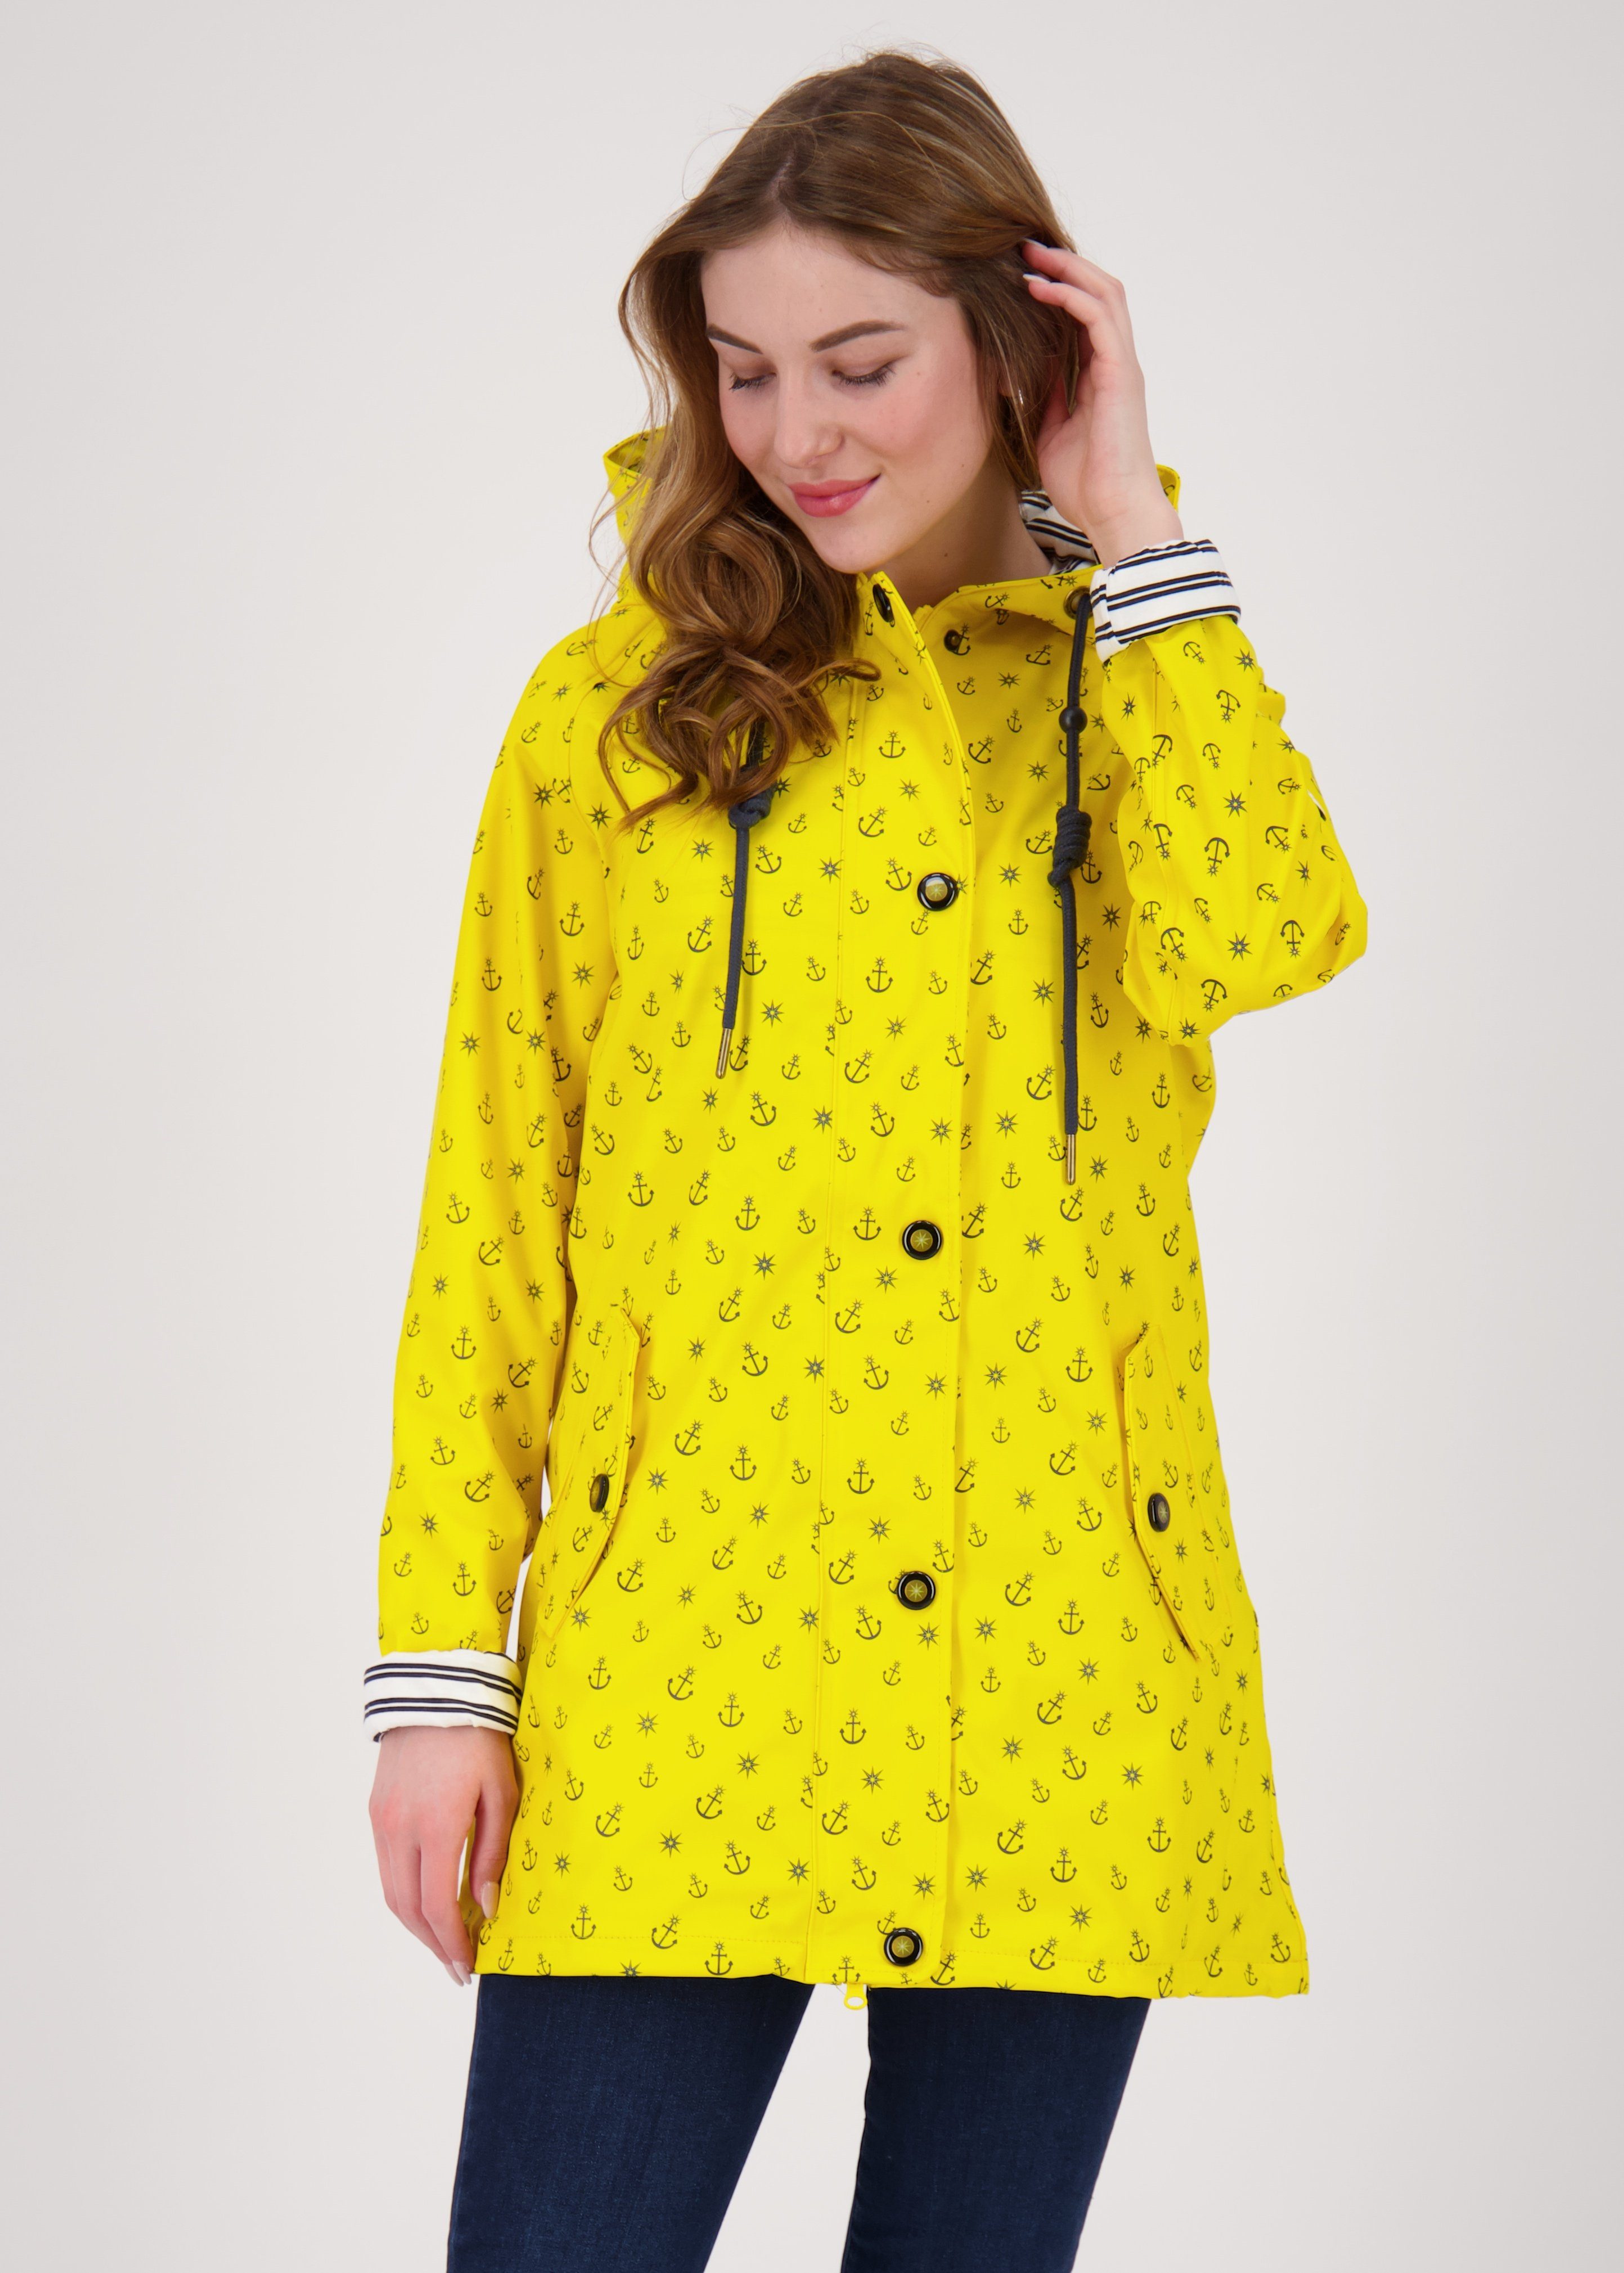 DEPROC Active Regenjacke Friesennerz #ankerglutzauber CS WOMEN auch in Großen Größen erhältlich yellow | Übergangsjacken